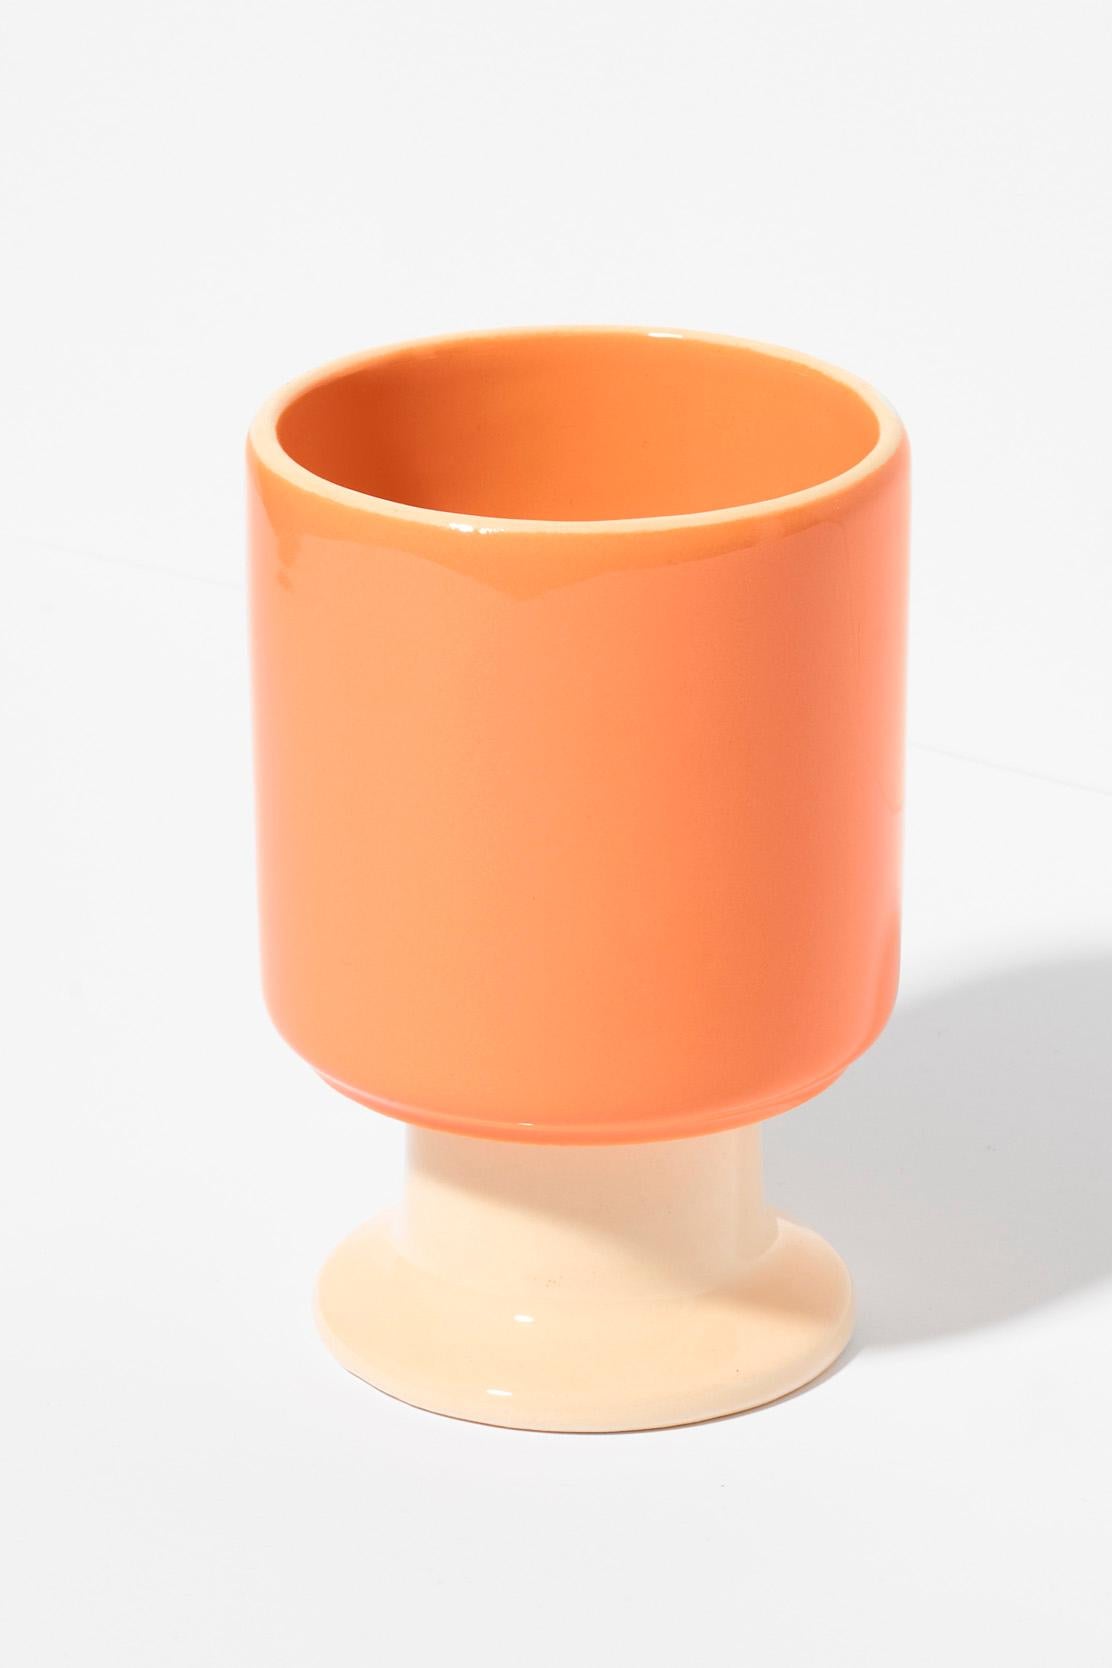 Die WIT-Tasse ist ein multifunktionales Gefäß mit einem verspielten Stiel. Er kann zu Ihrer Lieblingskaffeetasse, einer Dessertschale, einem Behälter für Stifte oder anderen Lieblingsaccessoires werden. Die Kelche von WIT können zu stabilen Türmen